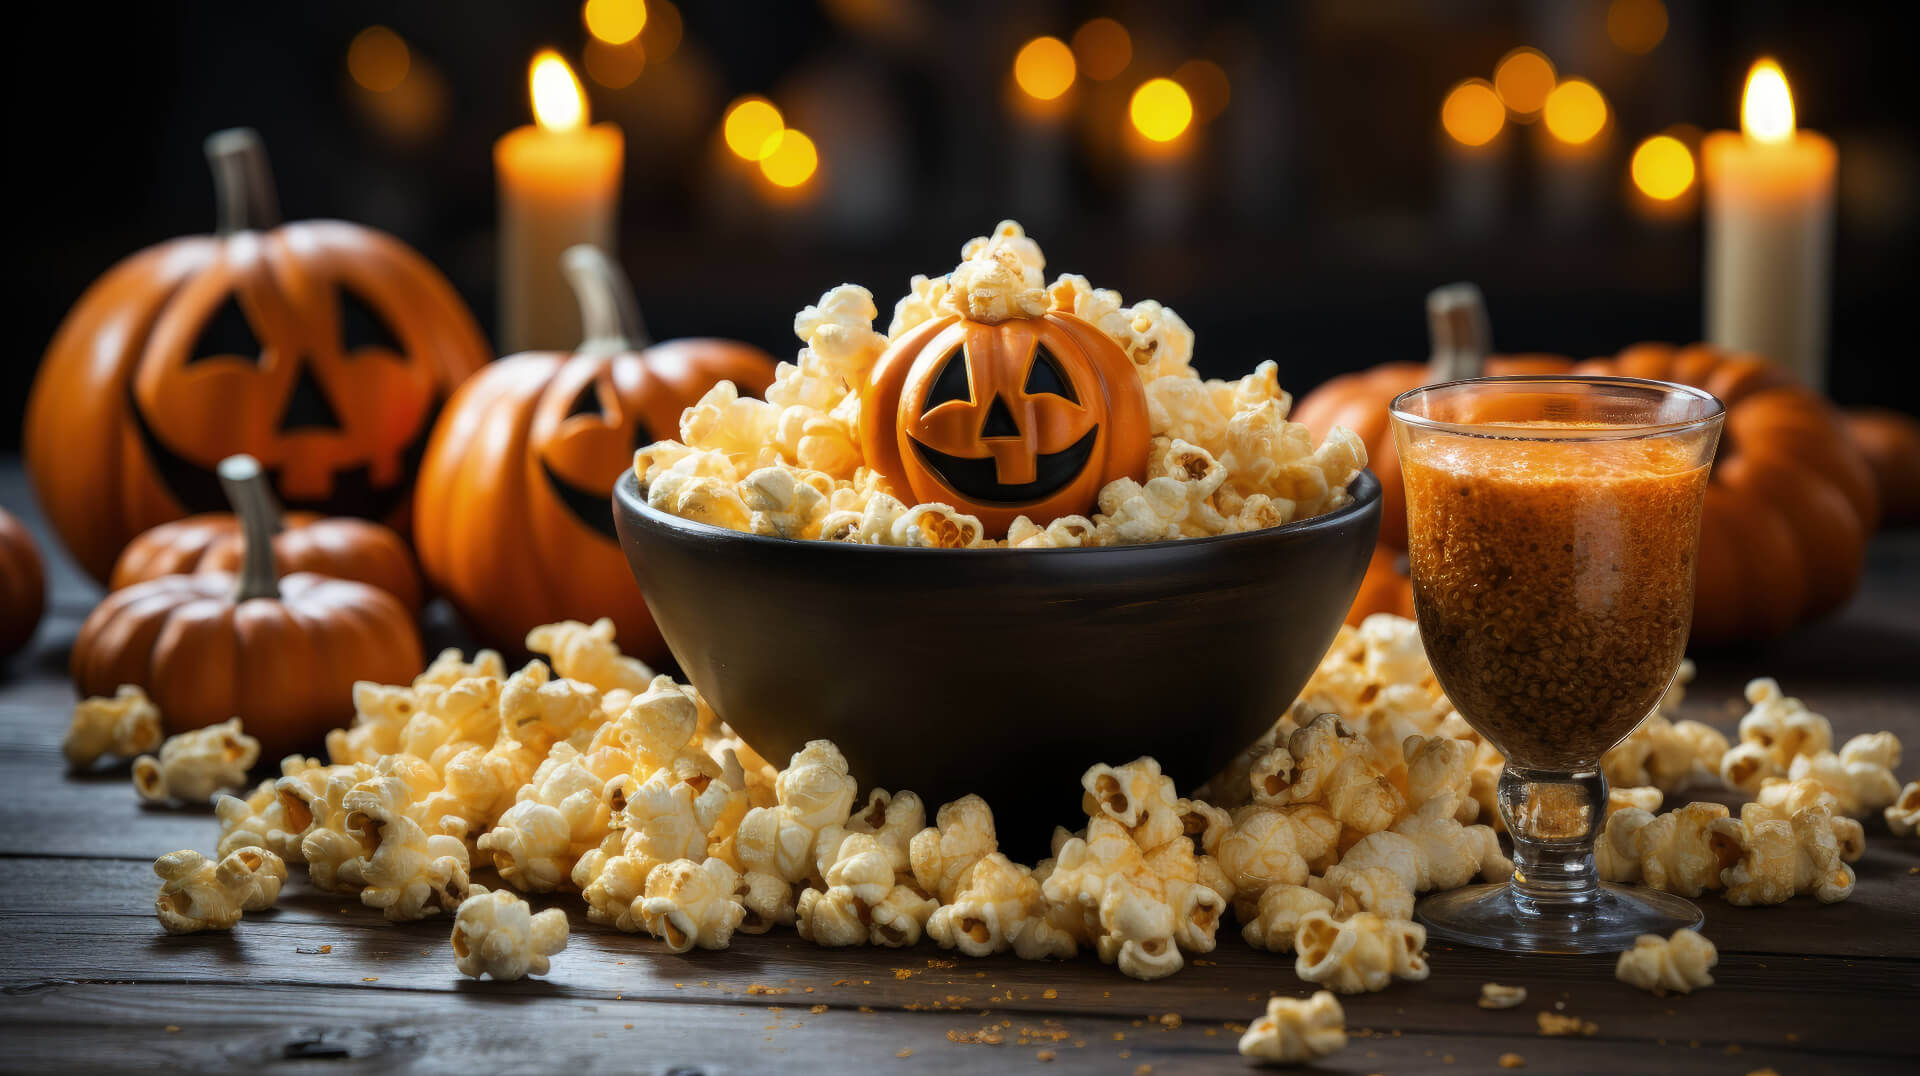 Erfahre die besten Gruselfilme für Halloween! Ob mit Familie oder Freunden, hier ist für jeden was dabei. Erlebe den perfekten Gruselspaß!